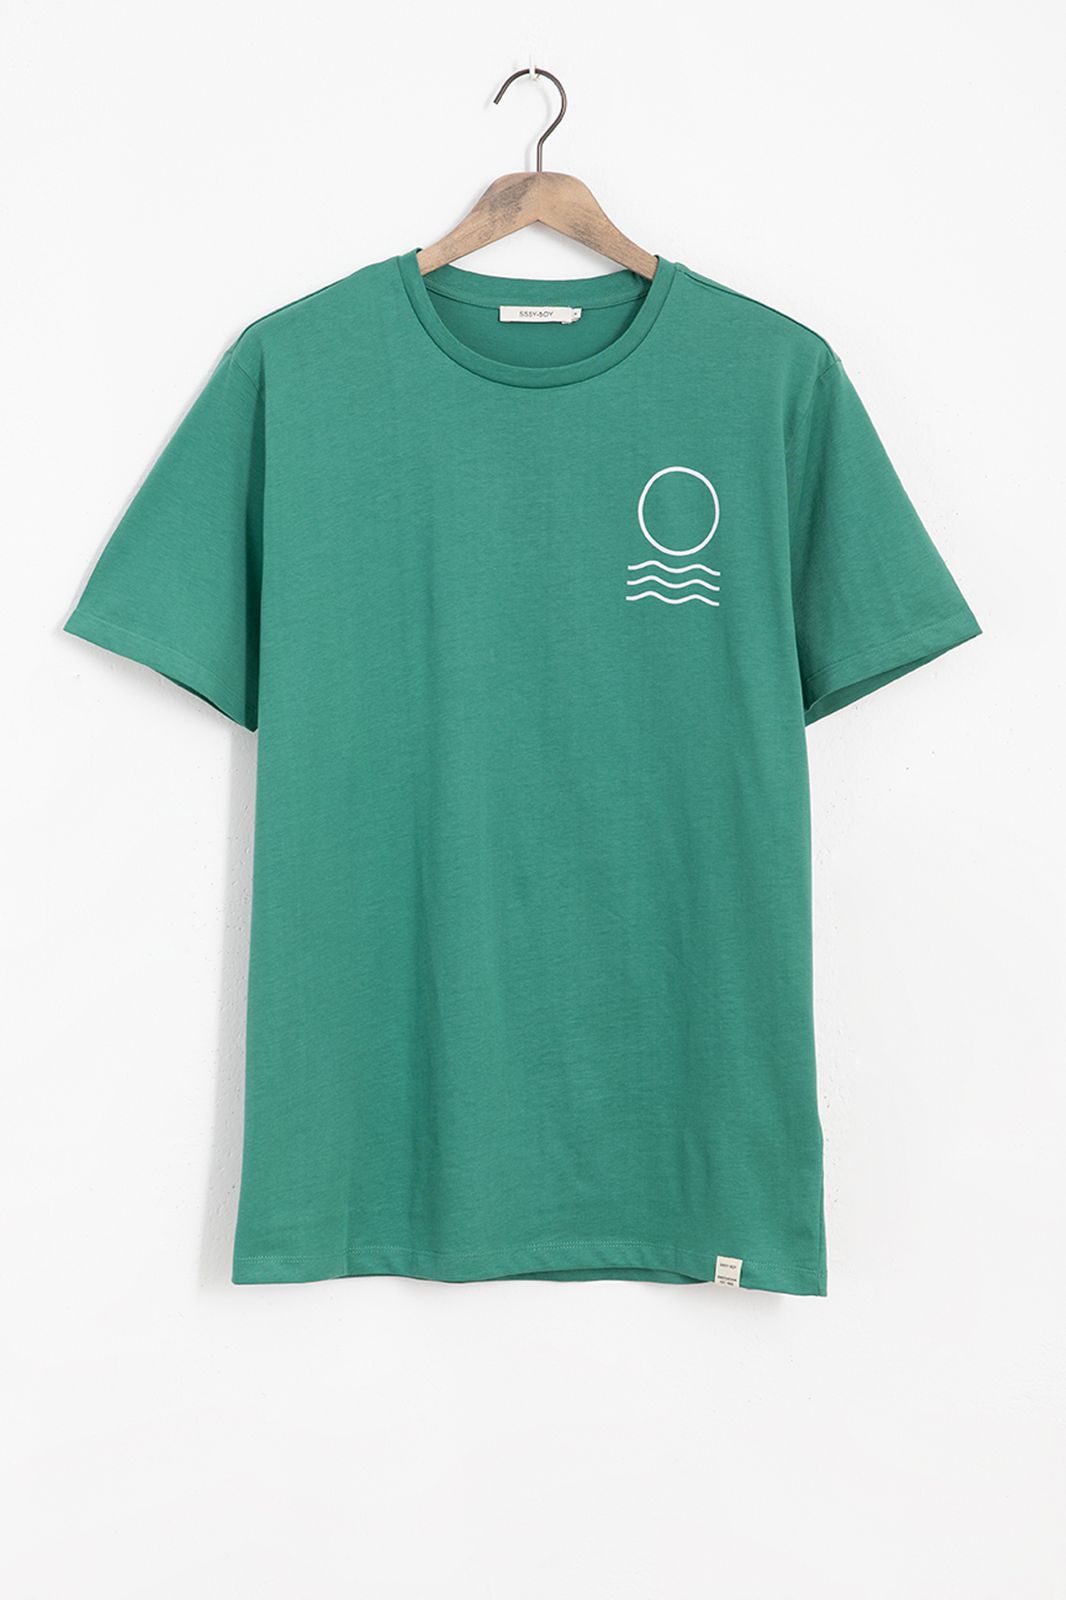 Groen T-shirt met print op rug